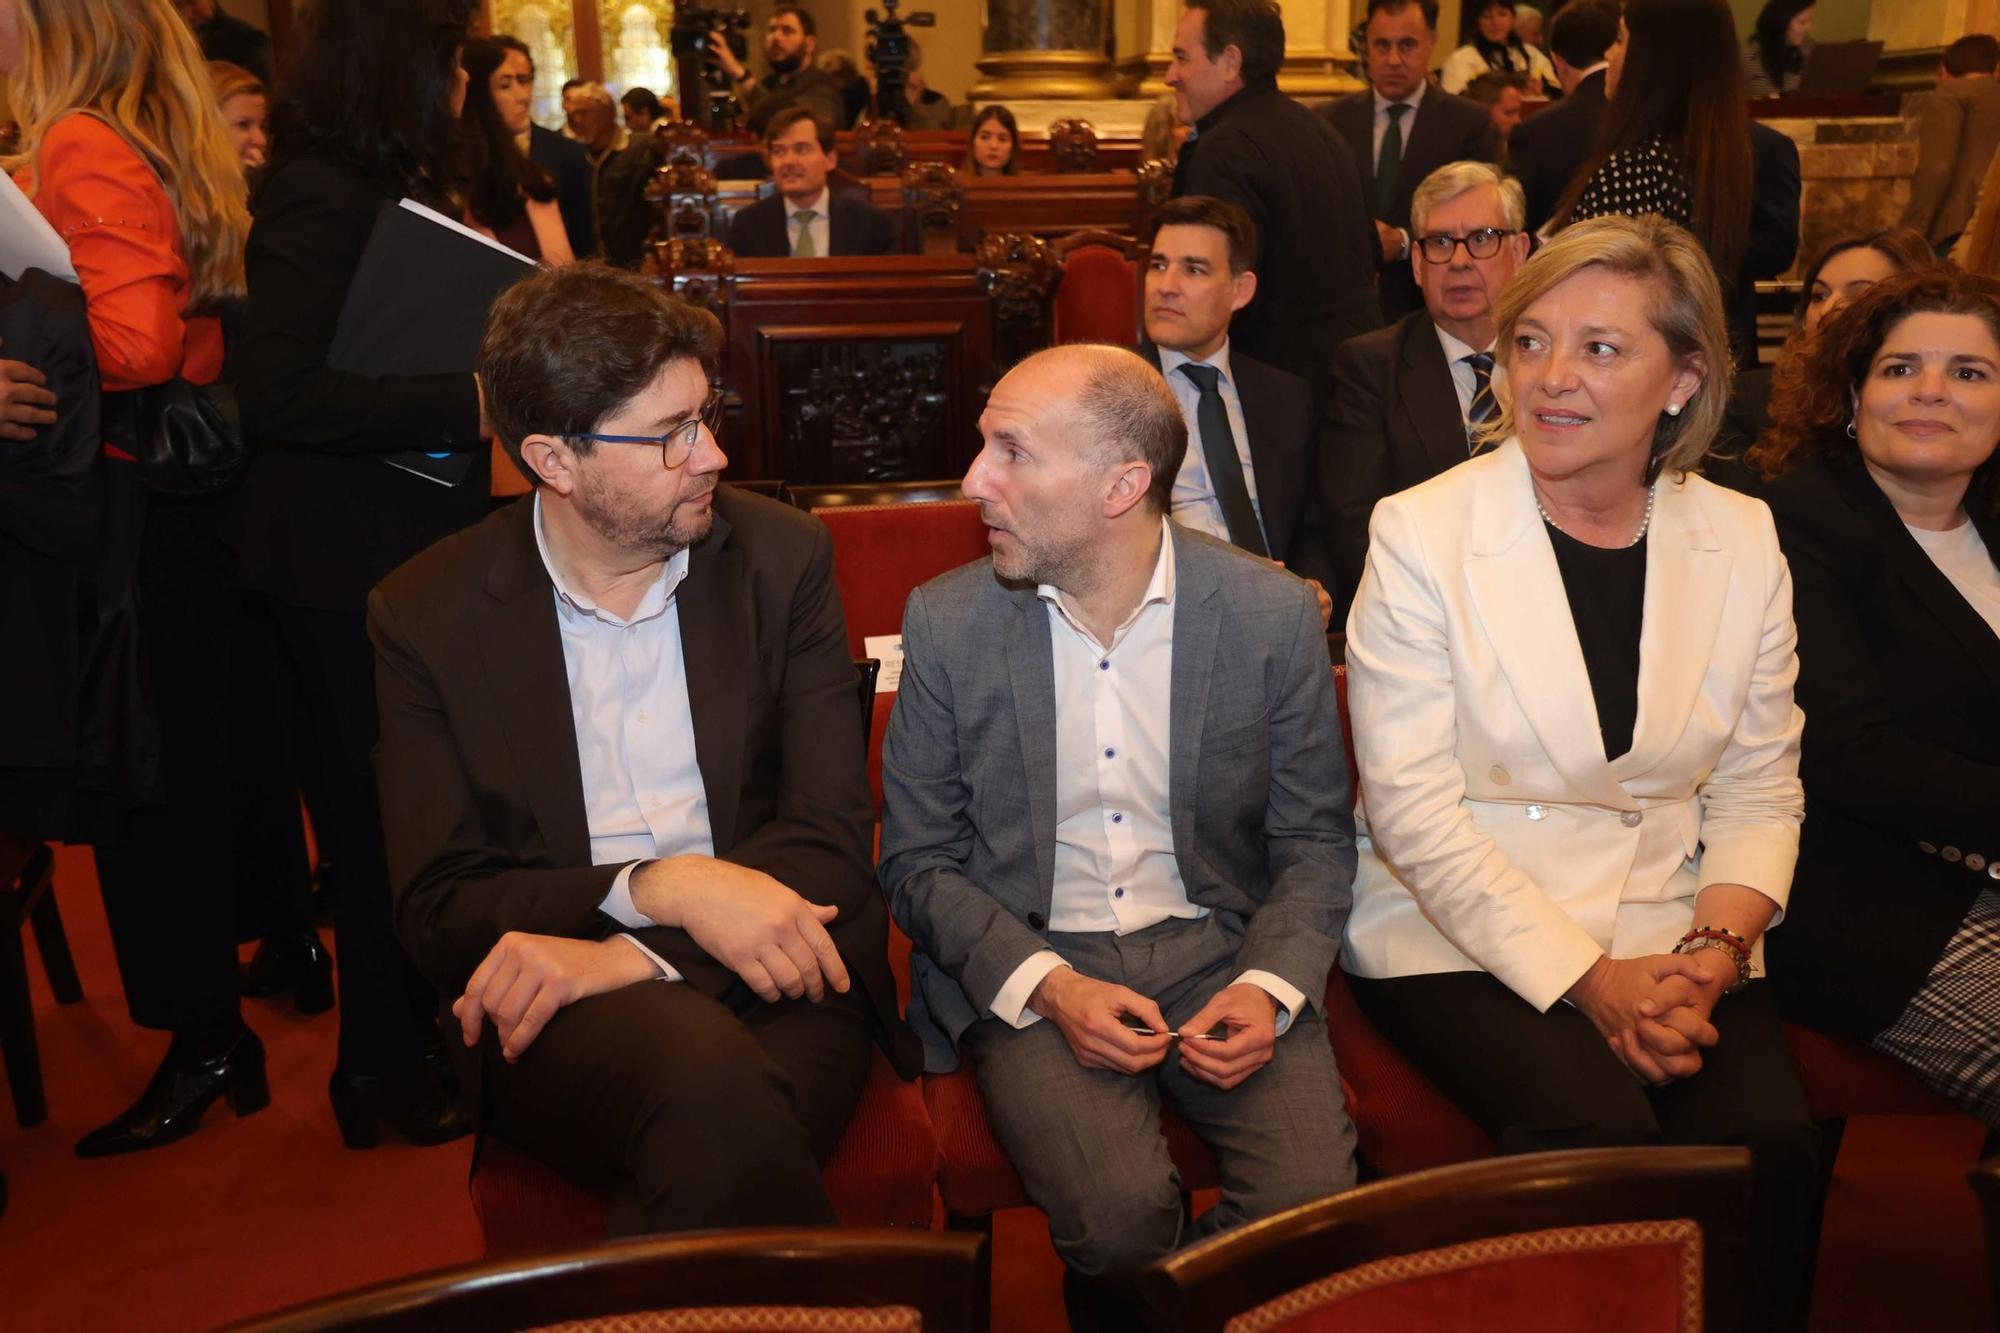 El ministro Óscar Puente presenta en el Ayuntamiento de A Coruña el plan director del Corredor Atlántico